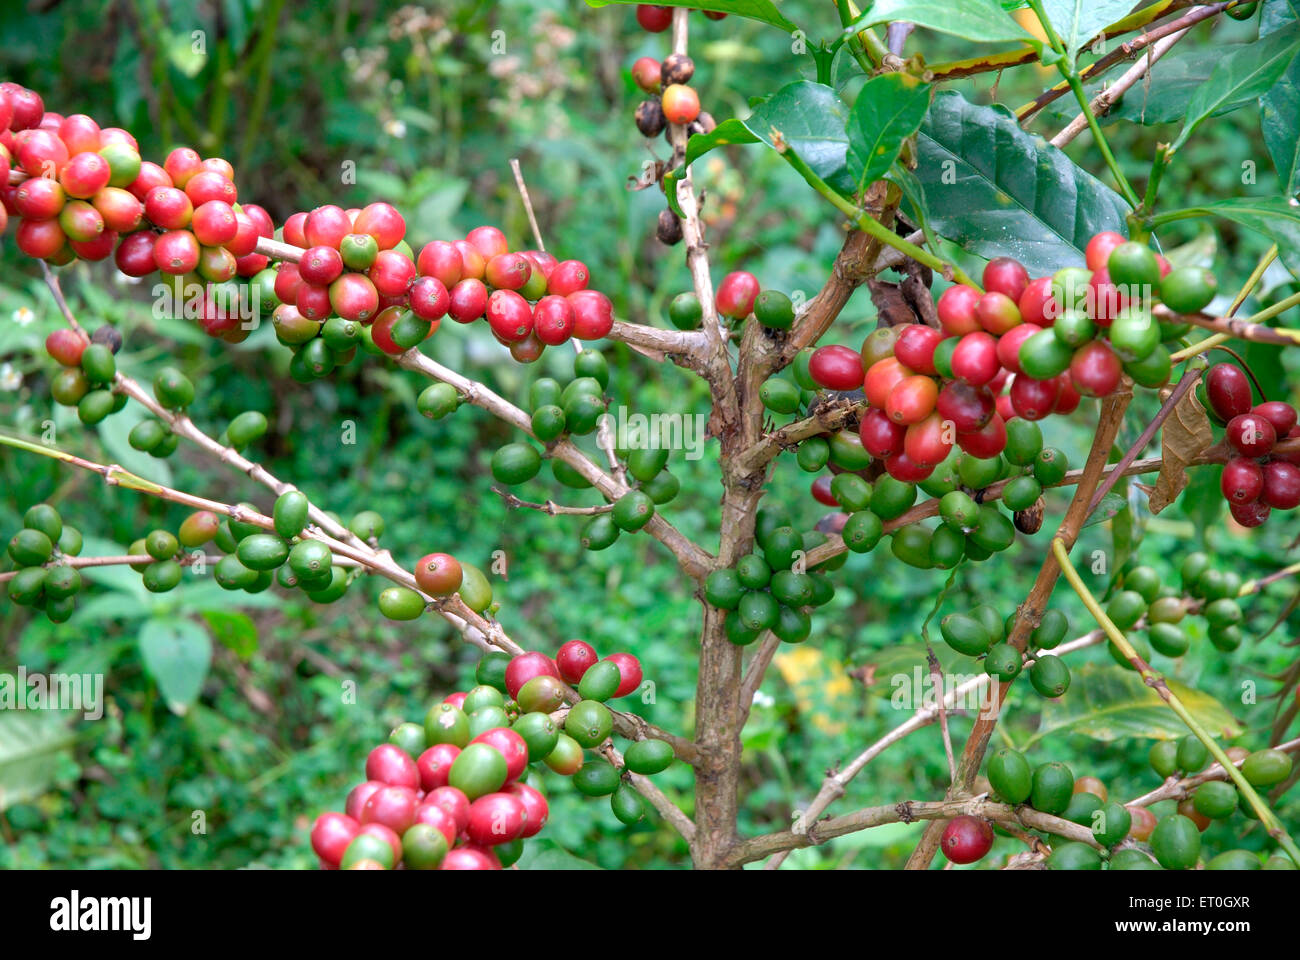 Cerisier de café, arbre de café, arbre de cerises de café, arbre de baies de café, arbre de baies de café, Madykeri, Madykery, Coorg, Karnataka, Inde, Asie Banque D'Images